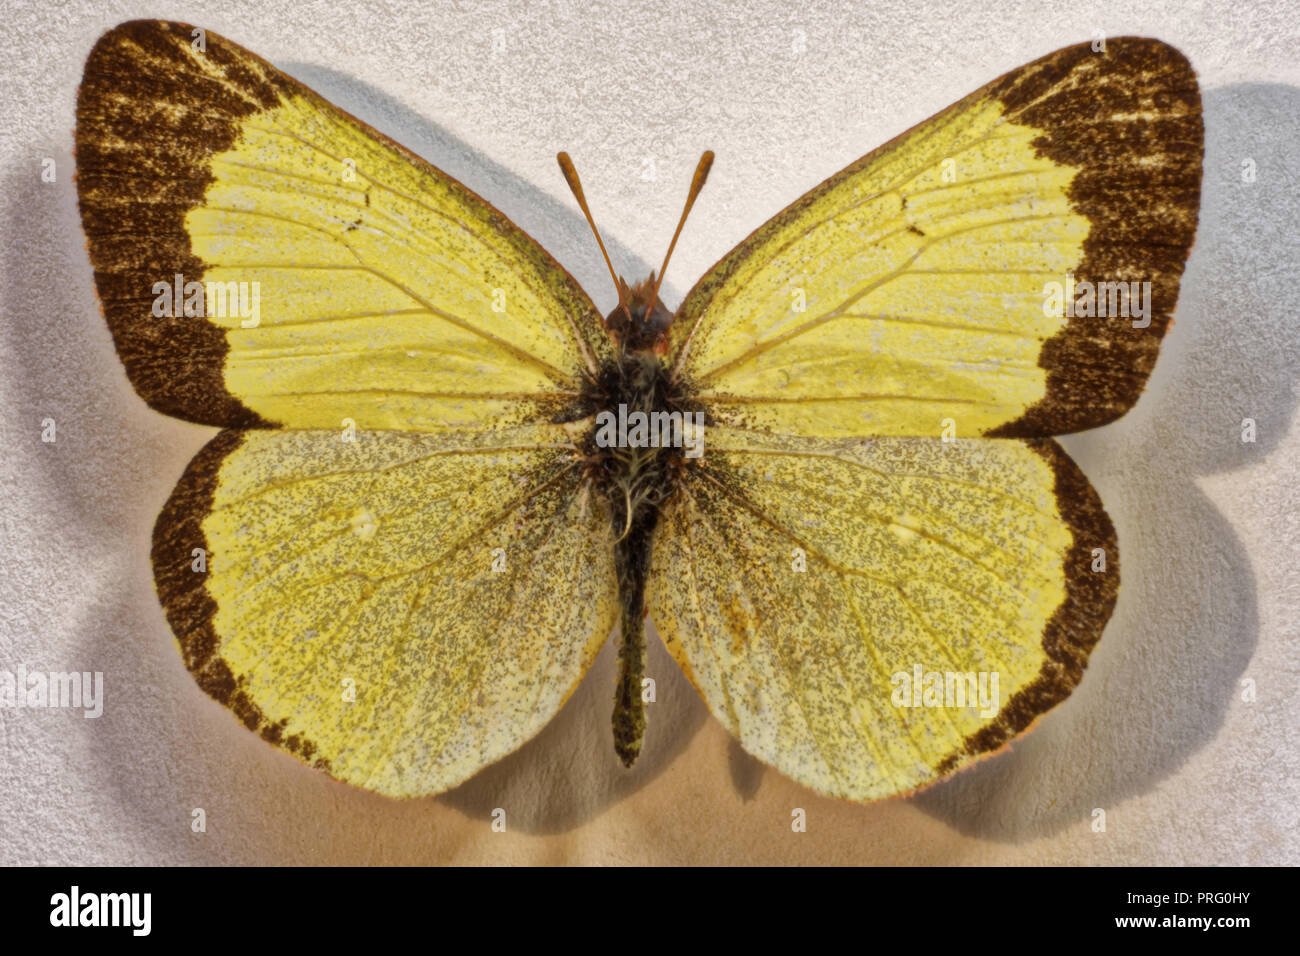 Peat Zheltushka butterfly; insectsm, Russia Stock Photo